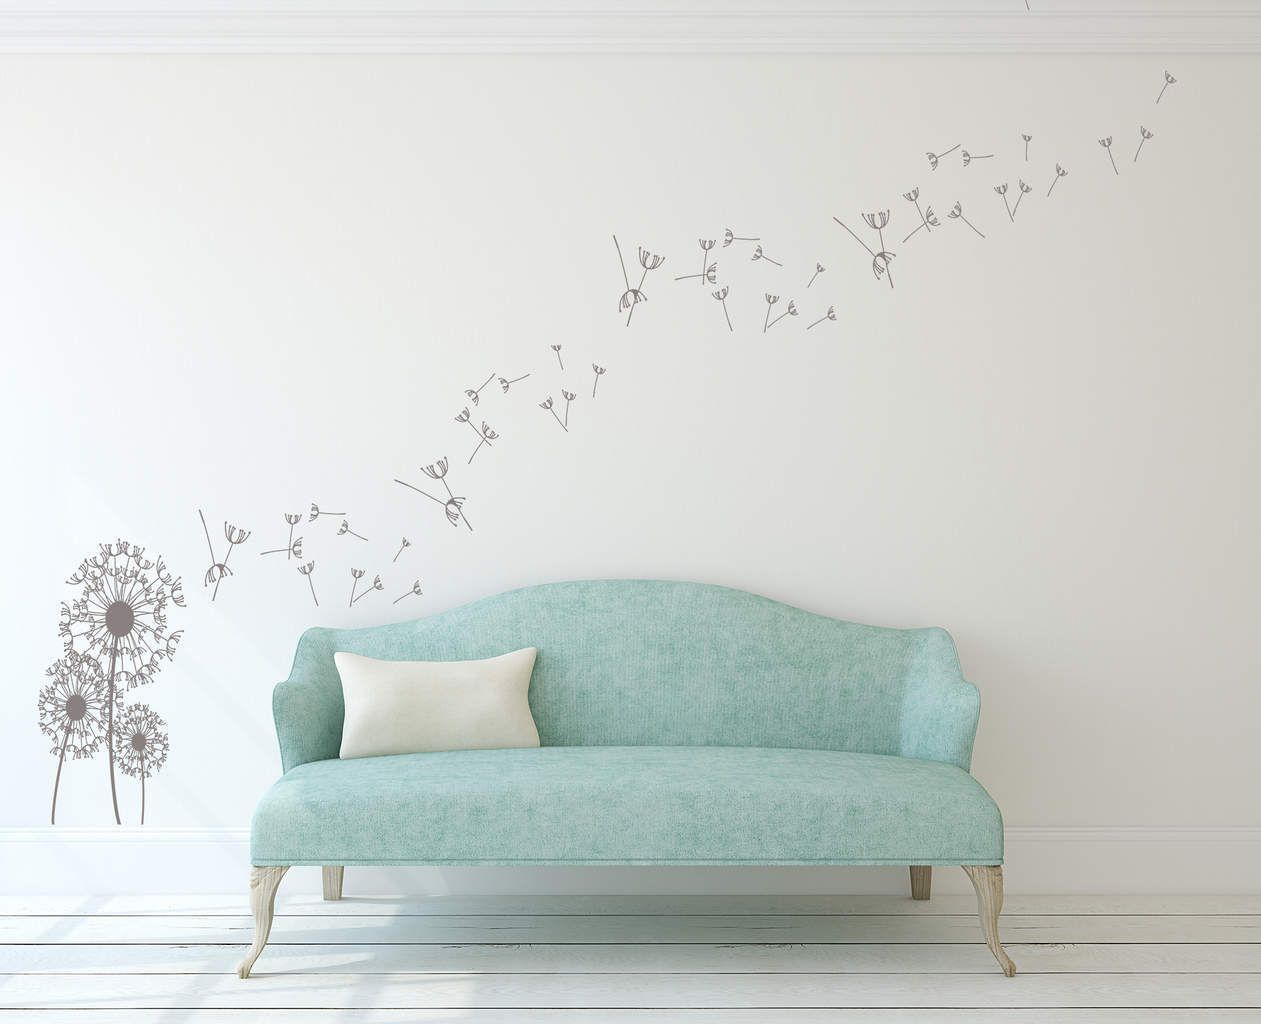 Dandelion Wall Art Decal | Dandelion Wall Decal Sticker Inside Flying Dandelion Wall Art (View 11 of 15)